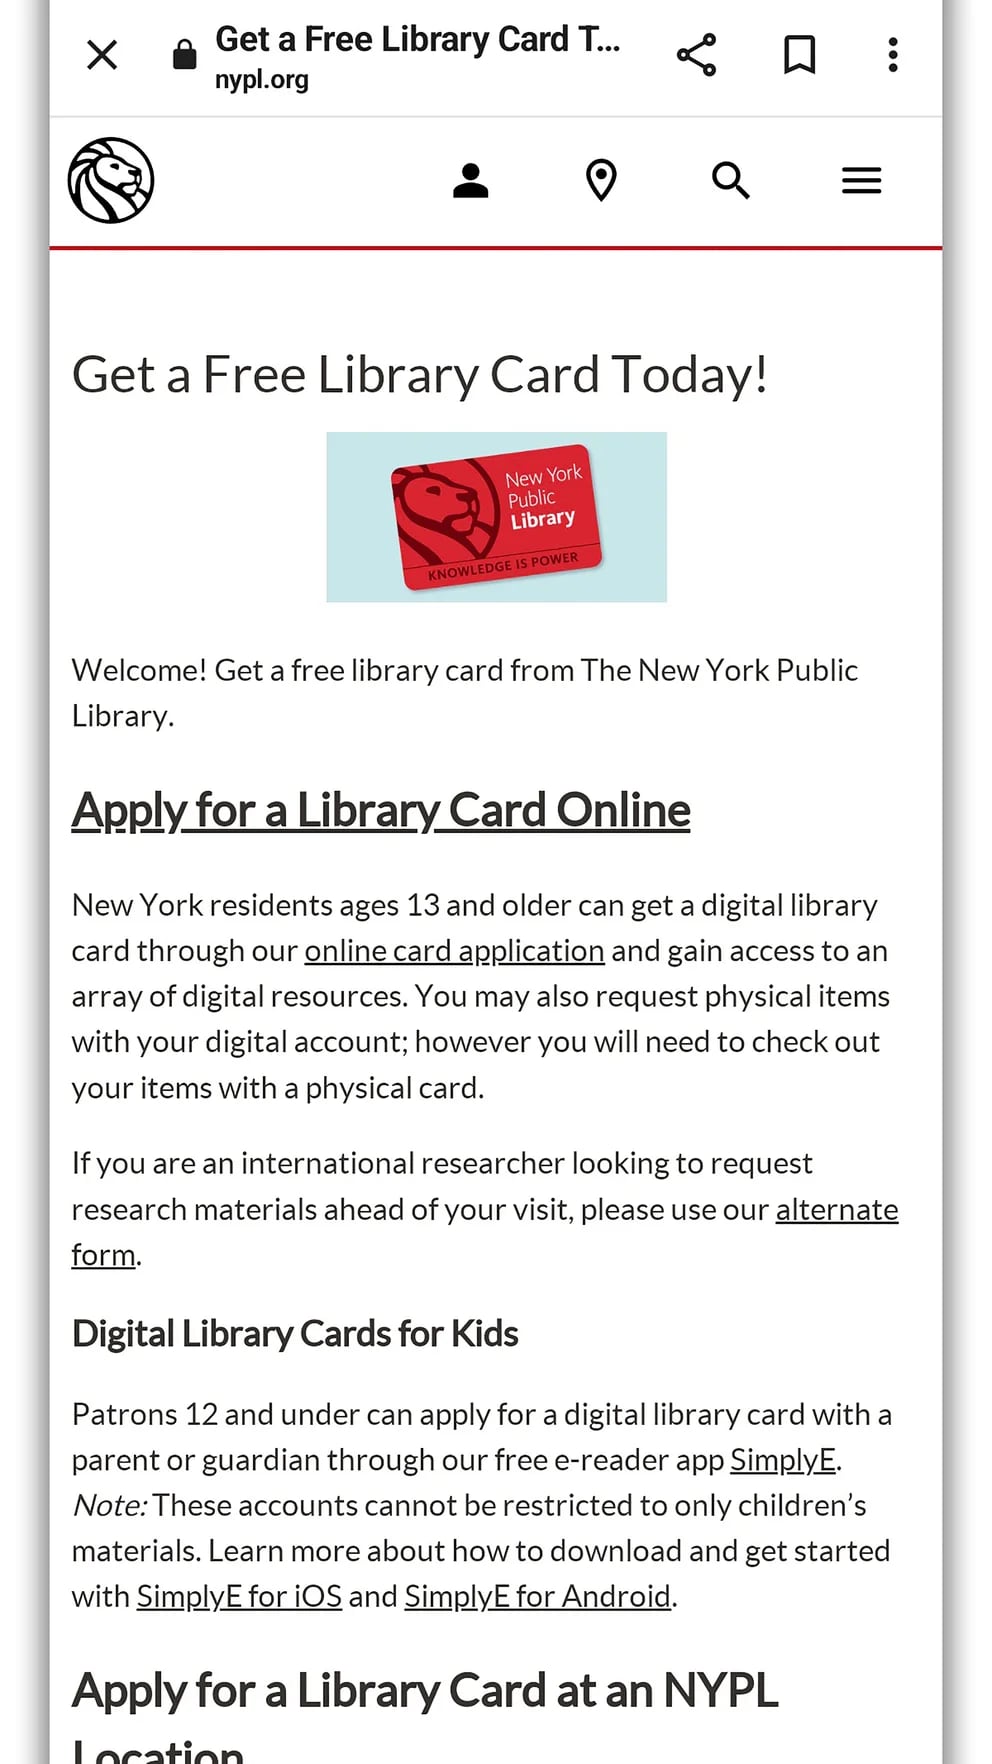 5 mitos sobre las bibliotecas digitales que deberías descartar - Infobae